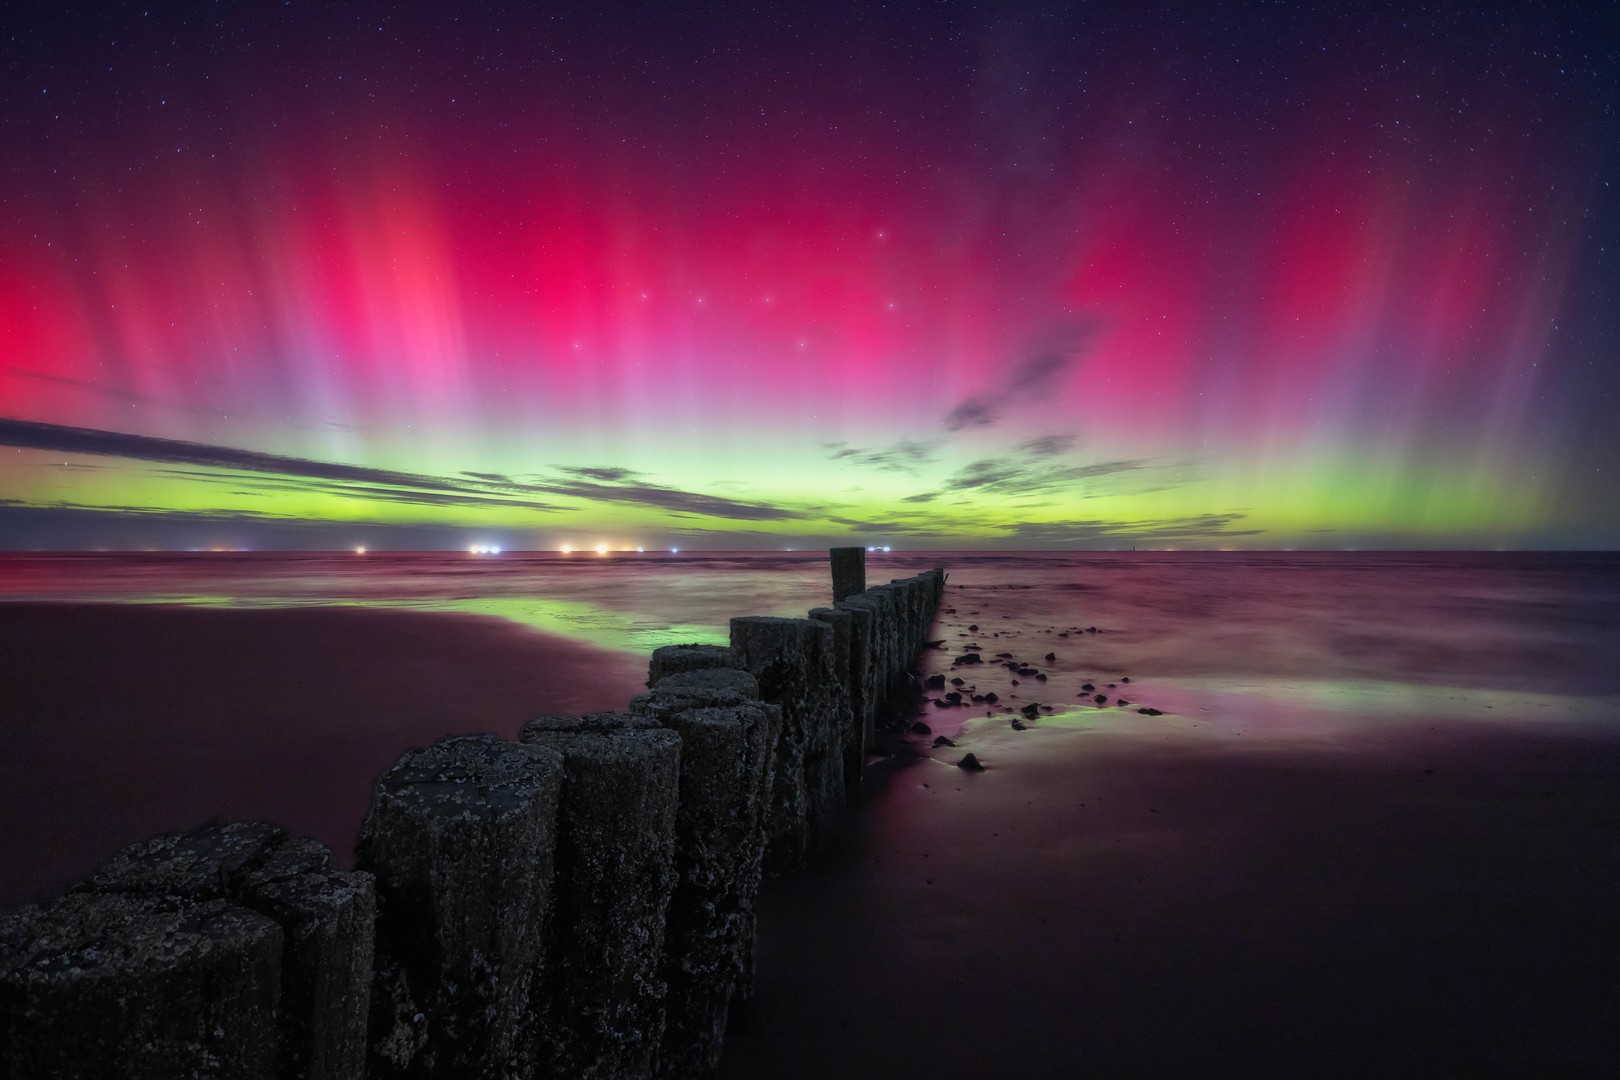 Aurora Boreal de color rojo intenso cubre el cielo nocturno, junto a ella se ve la Osa Mayor